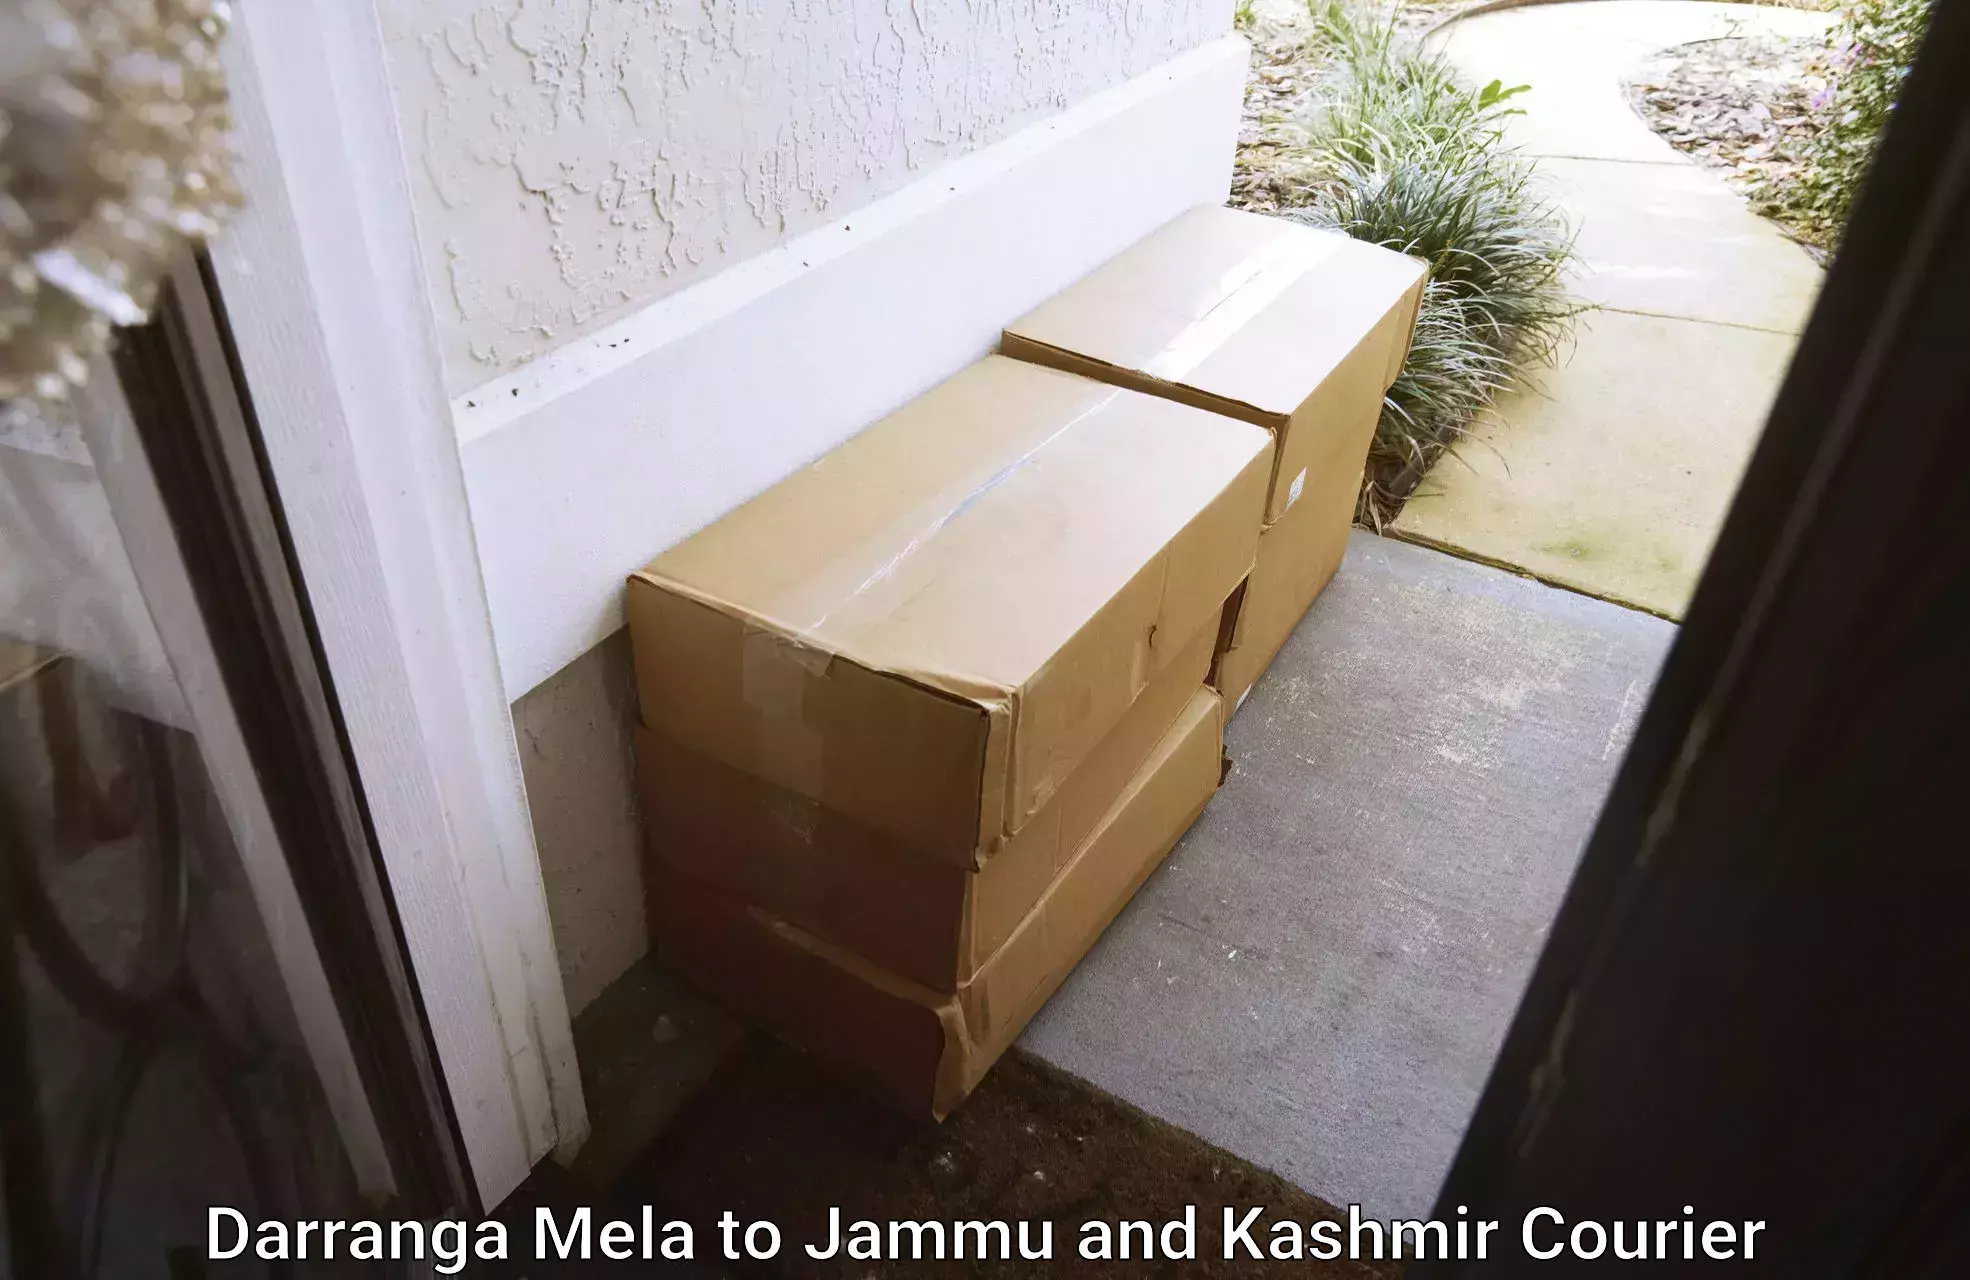 Smart courier technologies Darranga Mela to Budgam